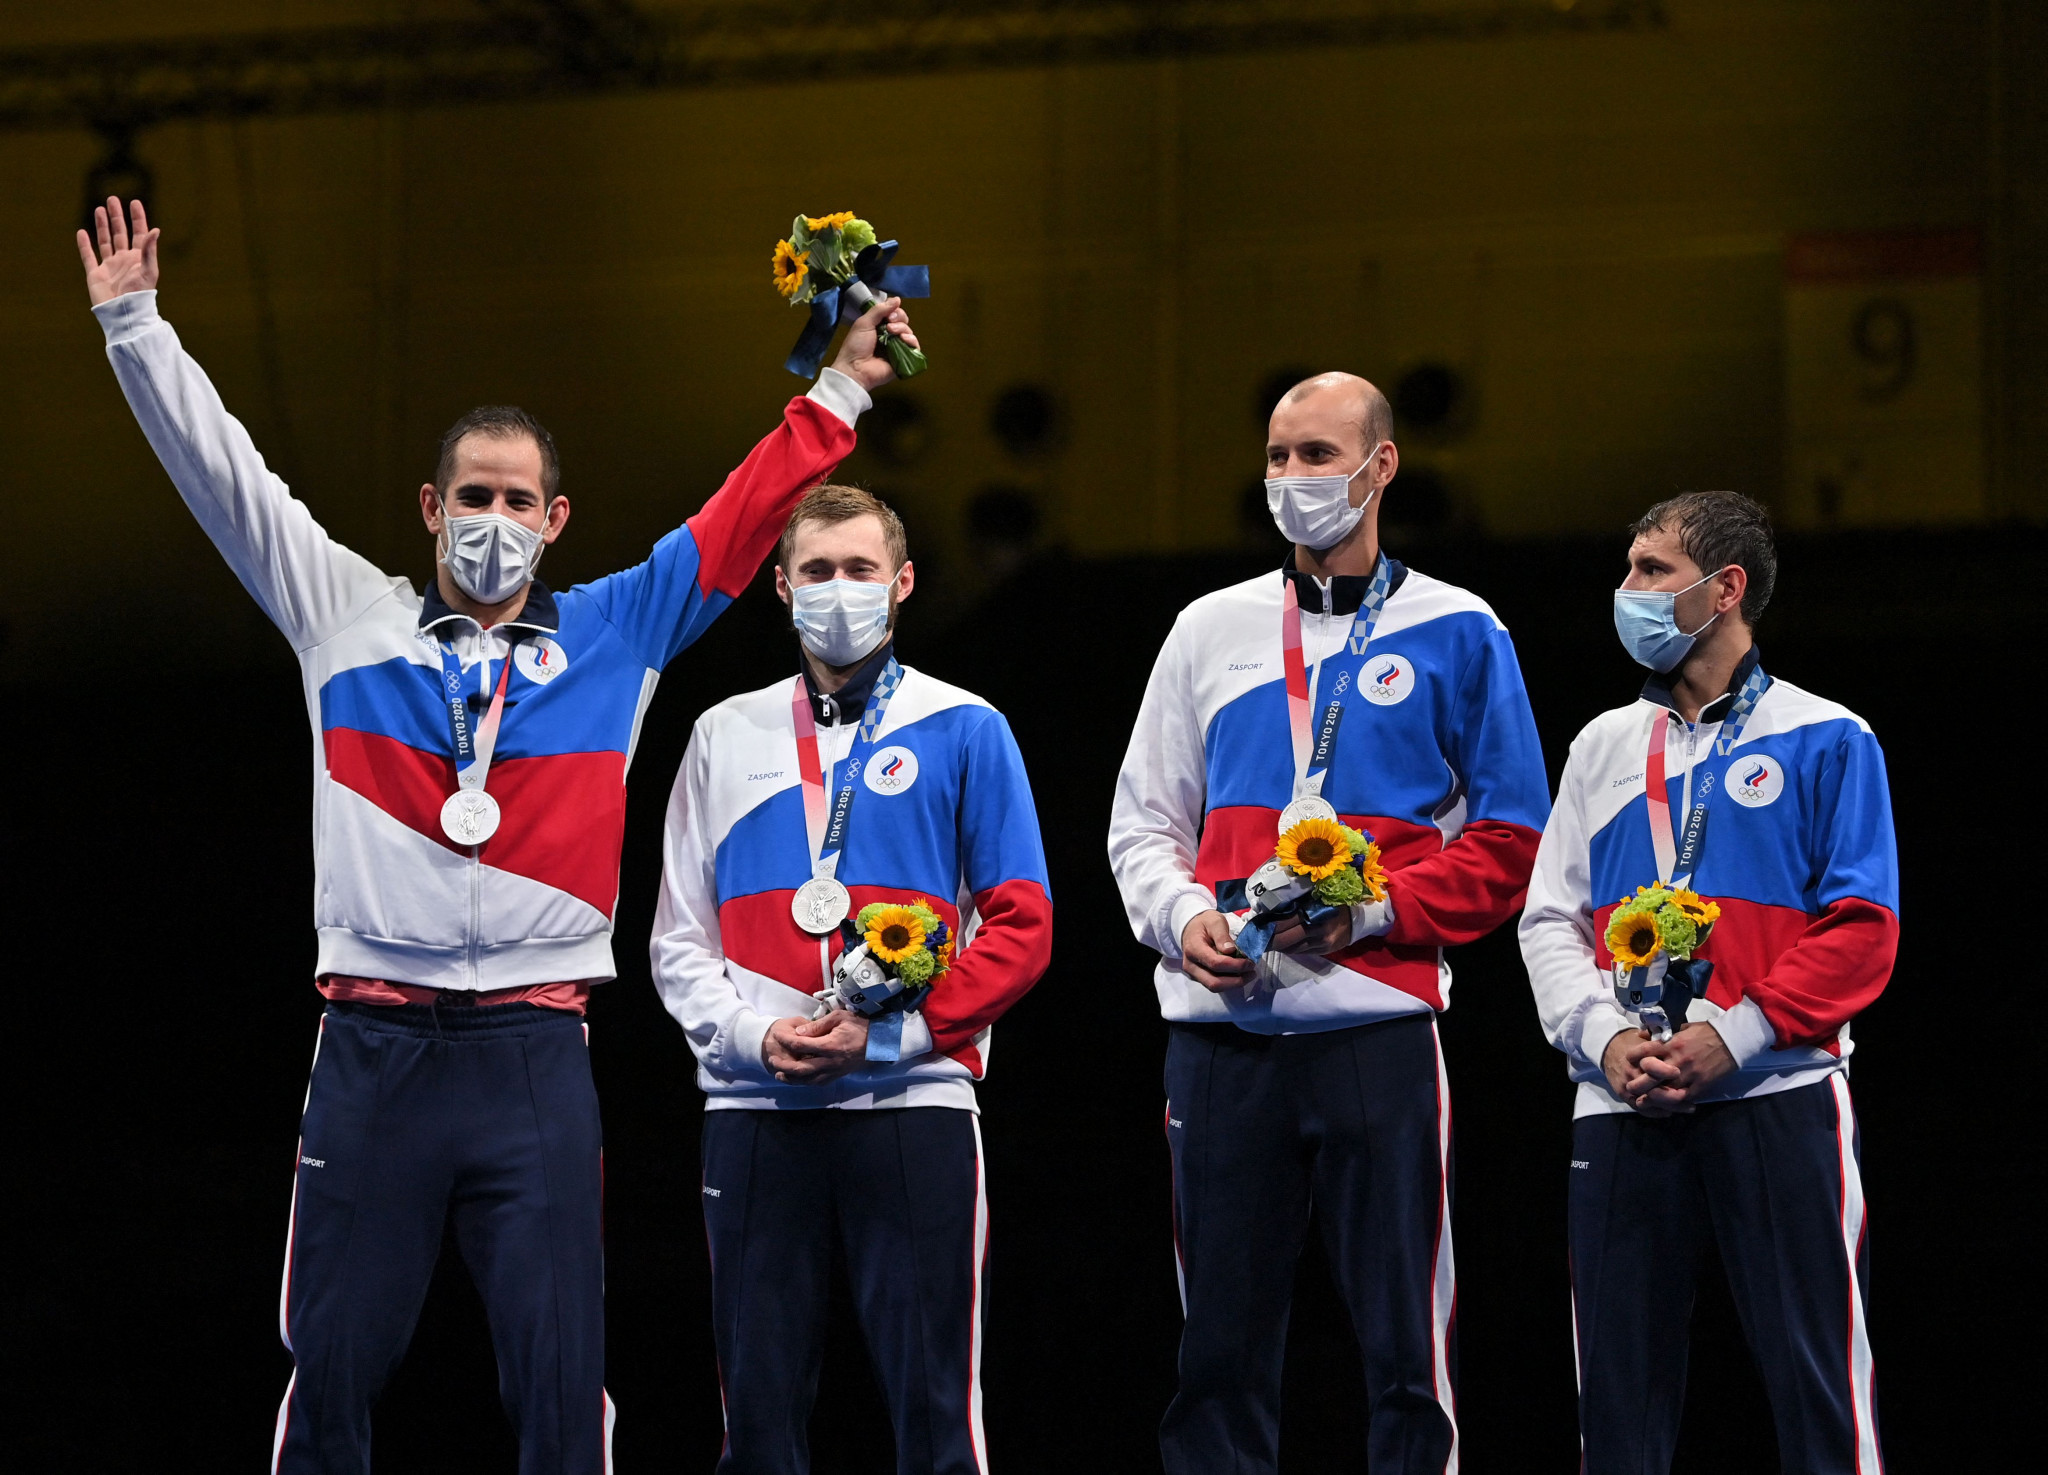 Hosts Russia triumph in men's team épée event at FIE World Cup in Sochi